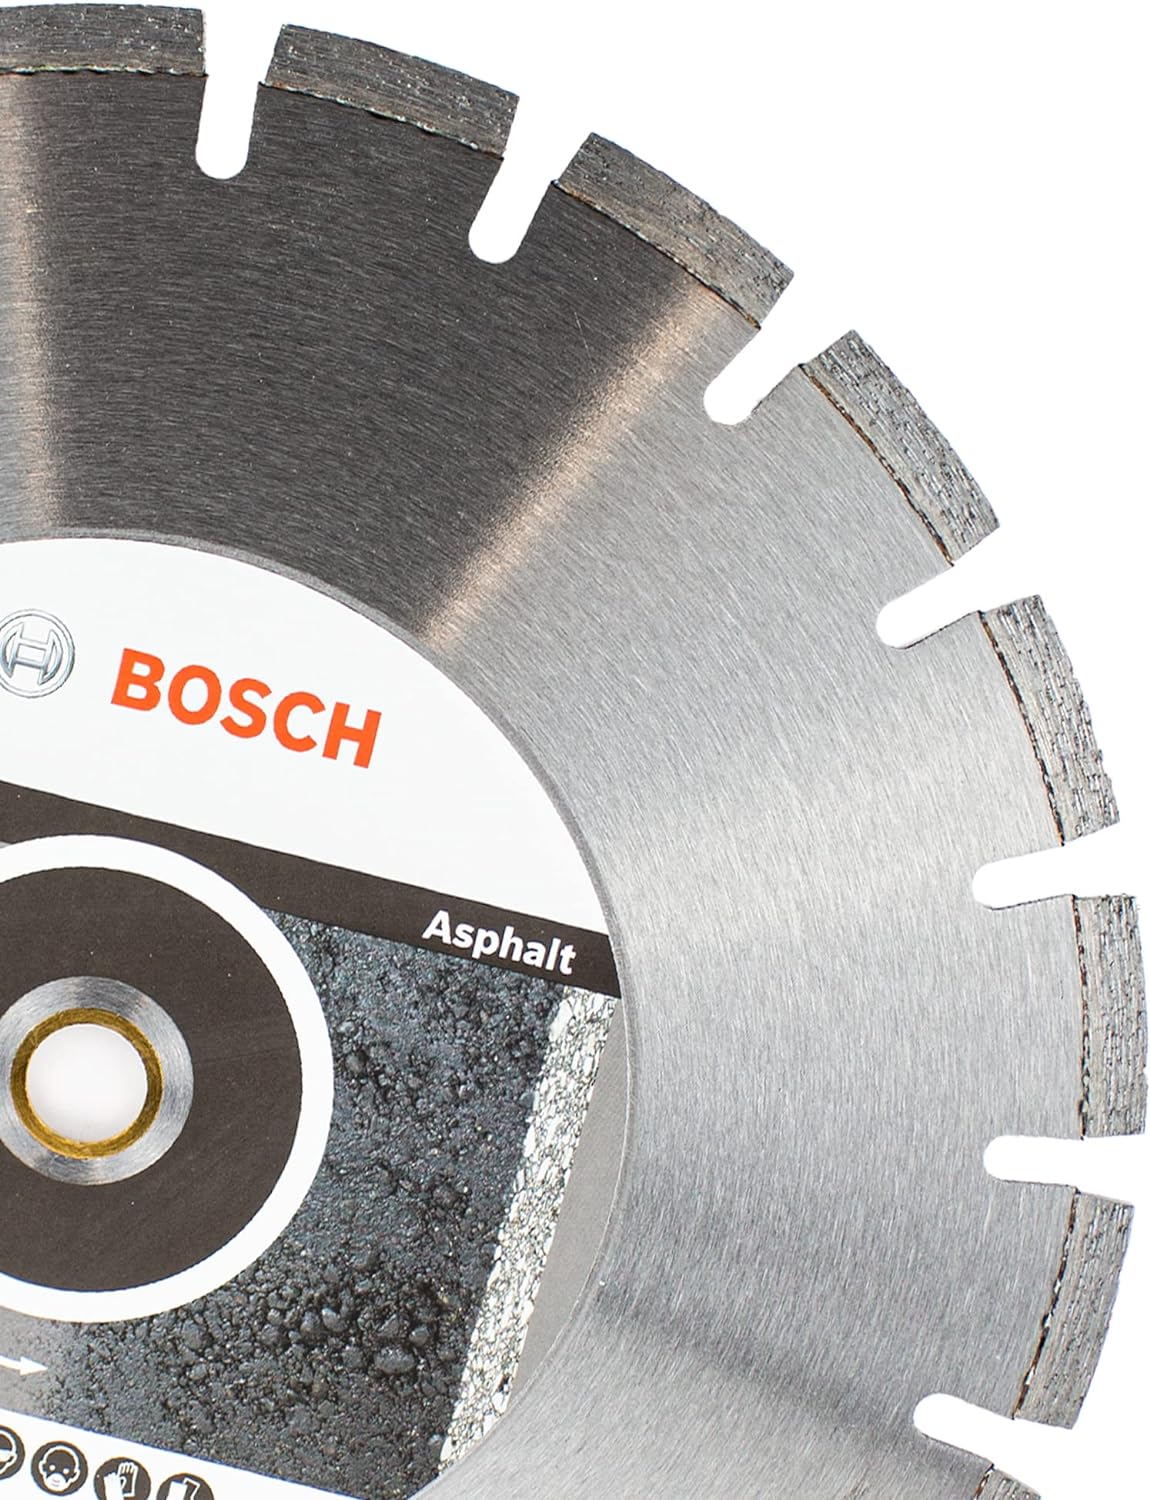 Disco Bosch 14" Diamantado Plus Asfalto 2608602625